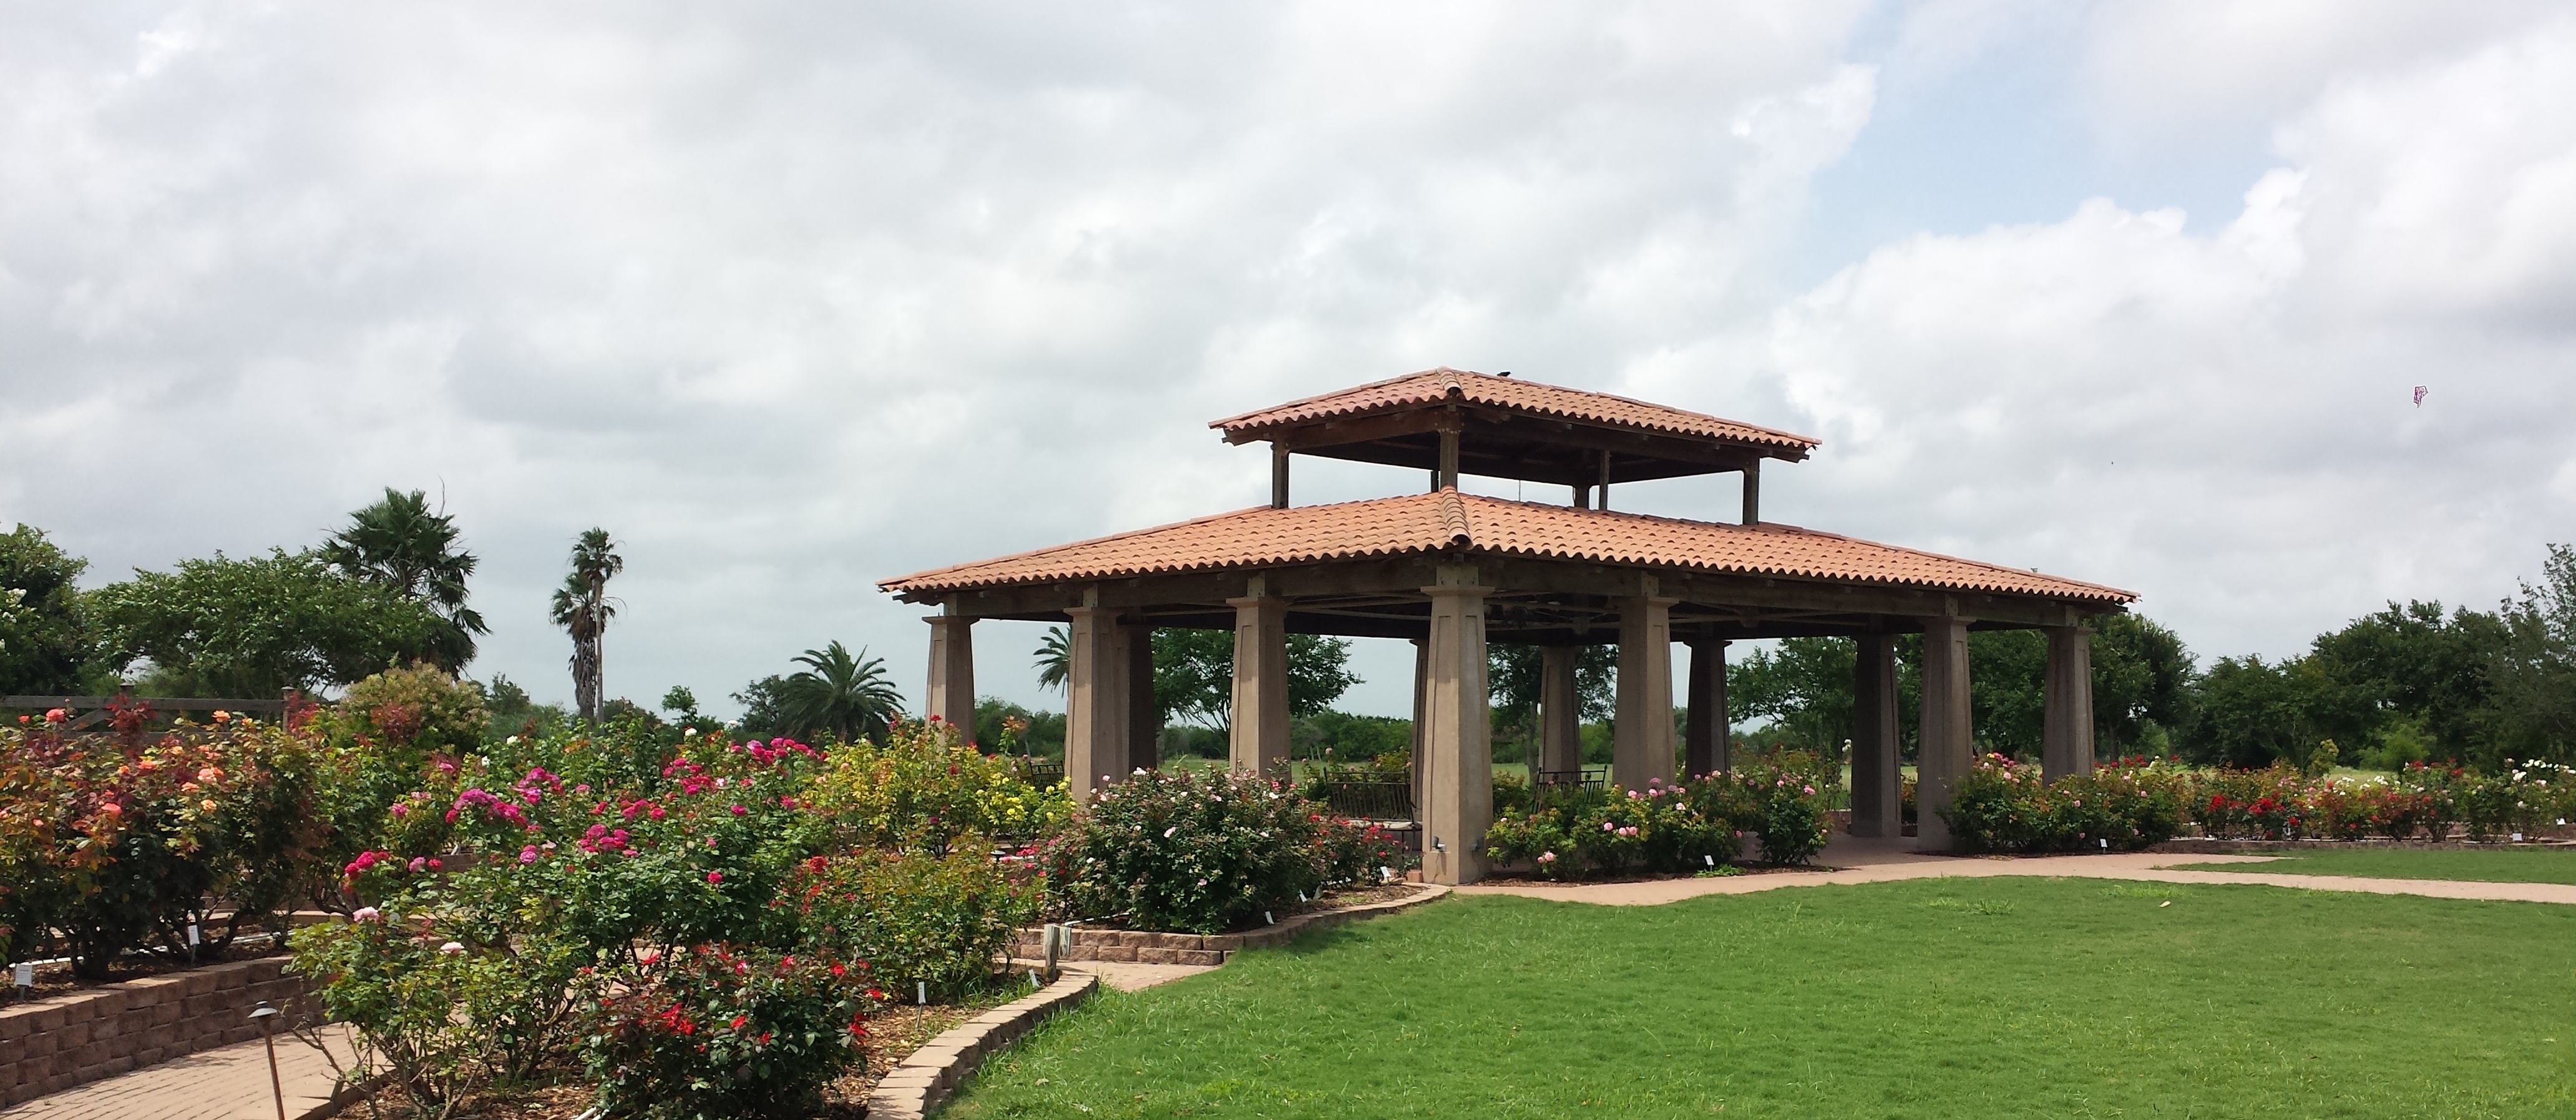 The South Texas Botanical Gardens